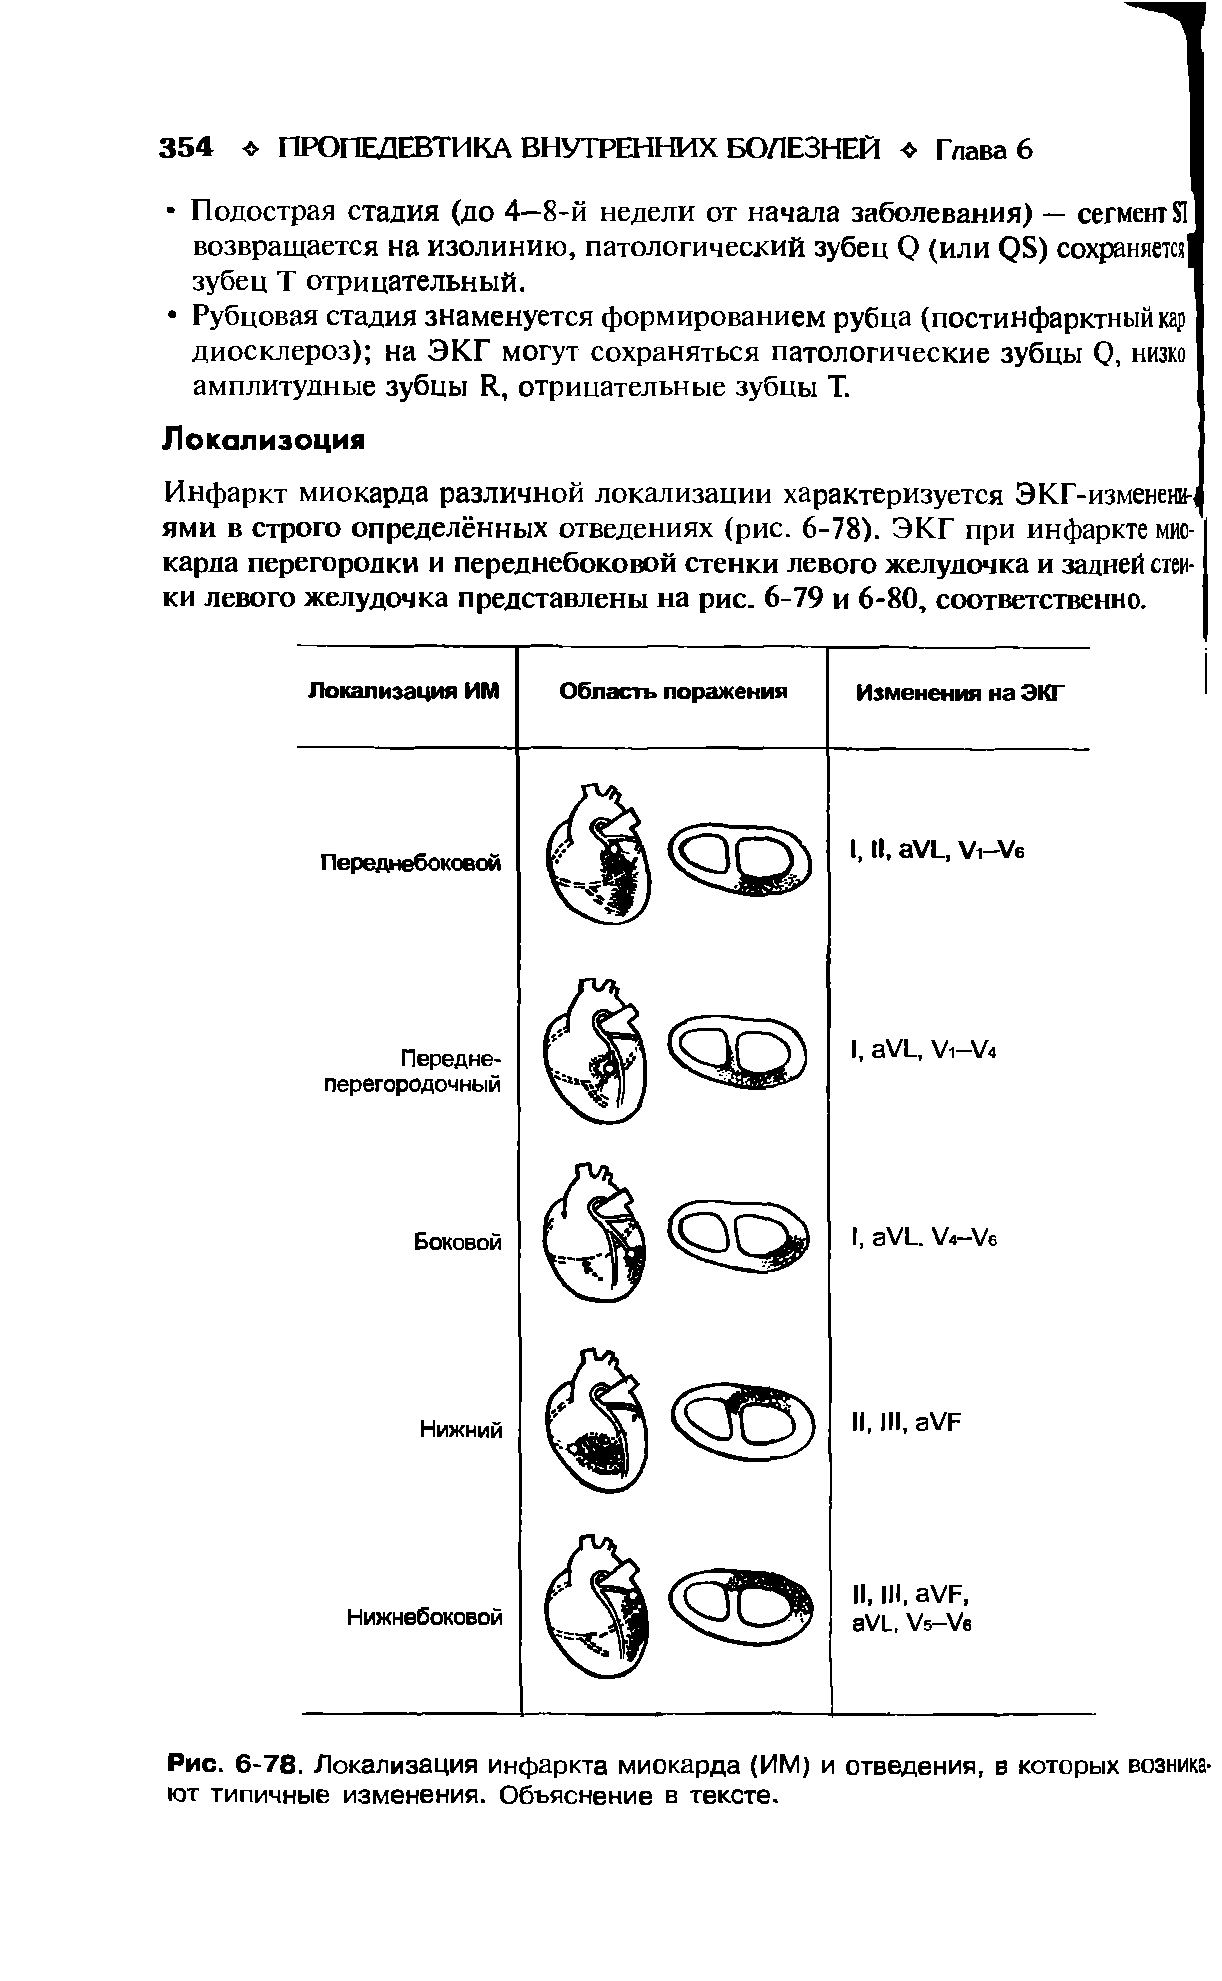 Рис. 6-78. Локализация инфаркта миокарда (ИМ) и отведения, в которых возникают типичные изменения. Объяснение в тексте.